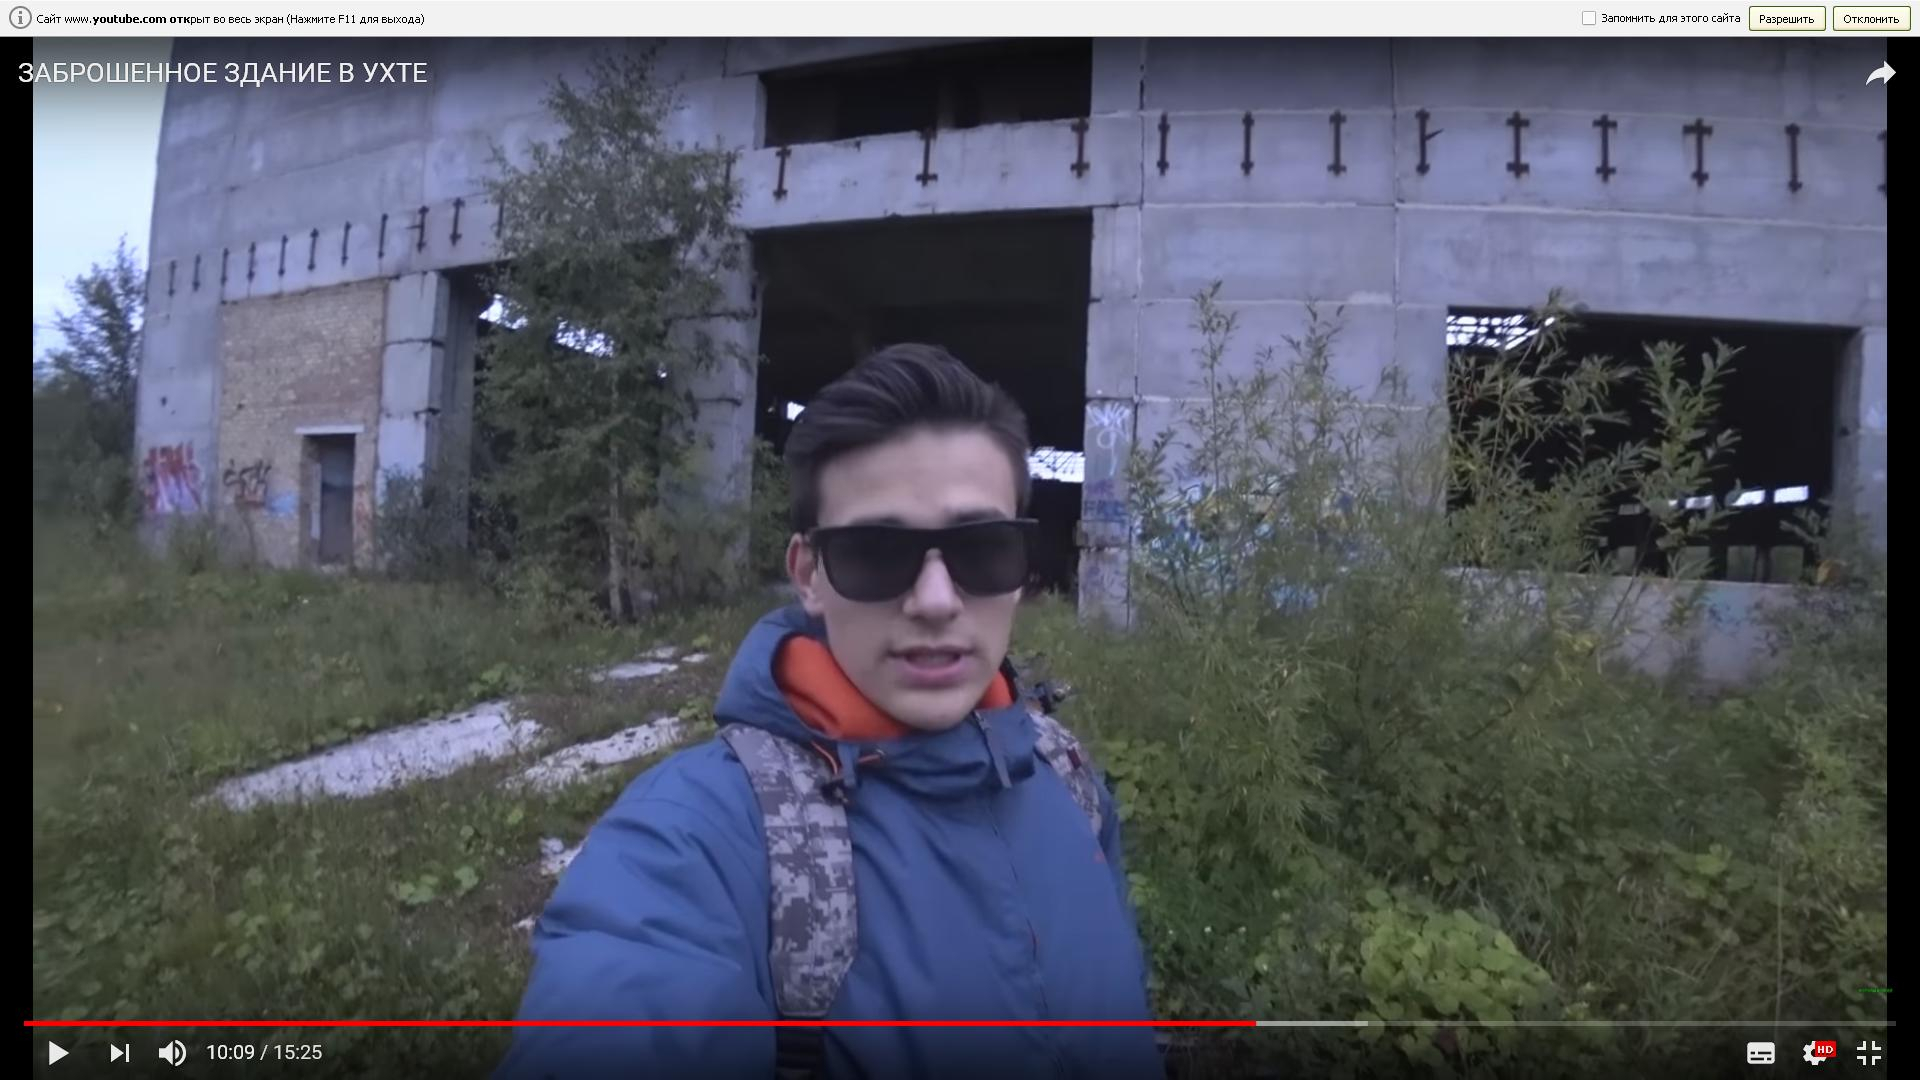 Ухтинский видеоблогер во время съемки в заброшенном доме от испуга прервал видео и убежал